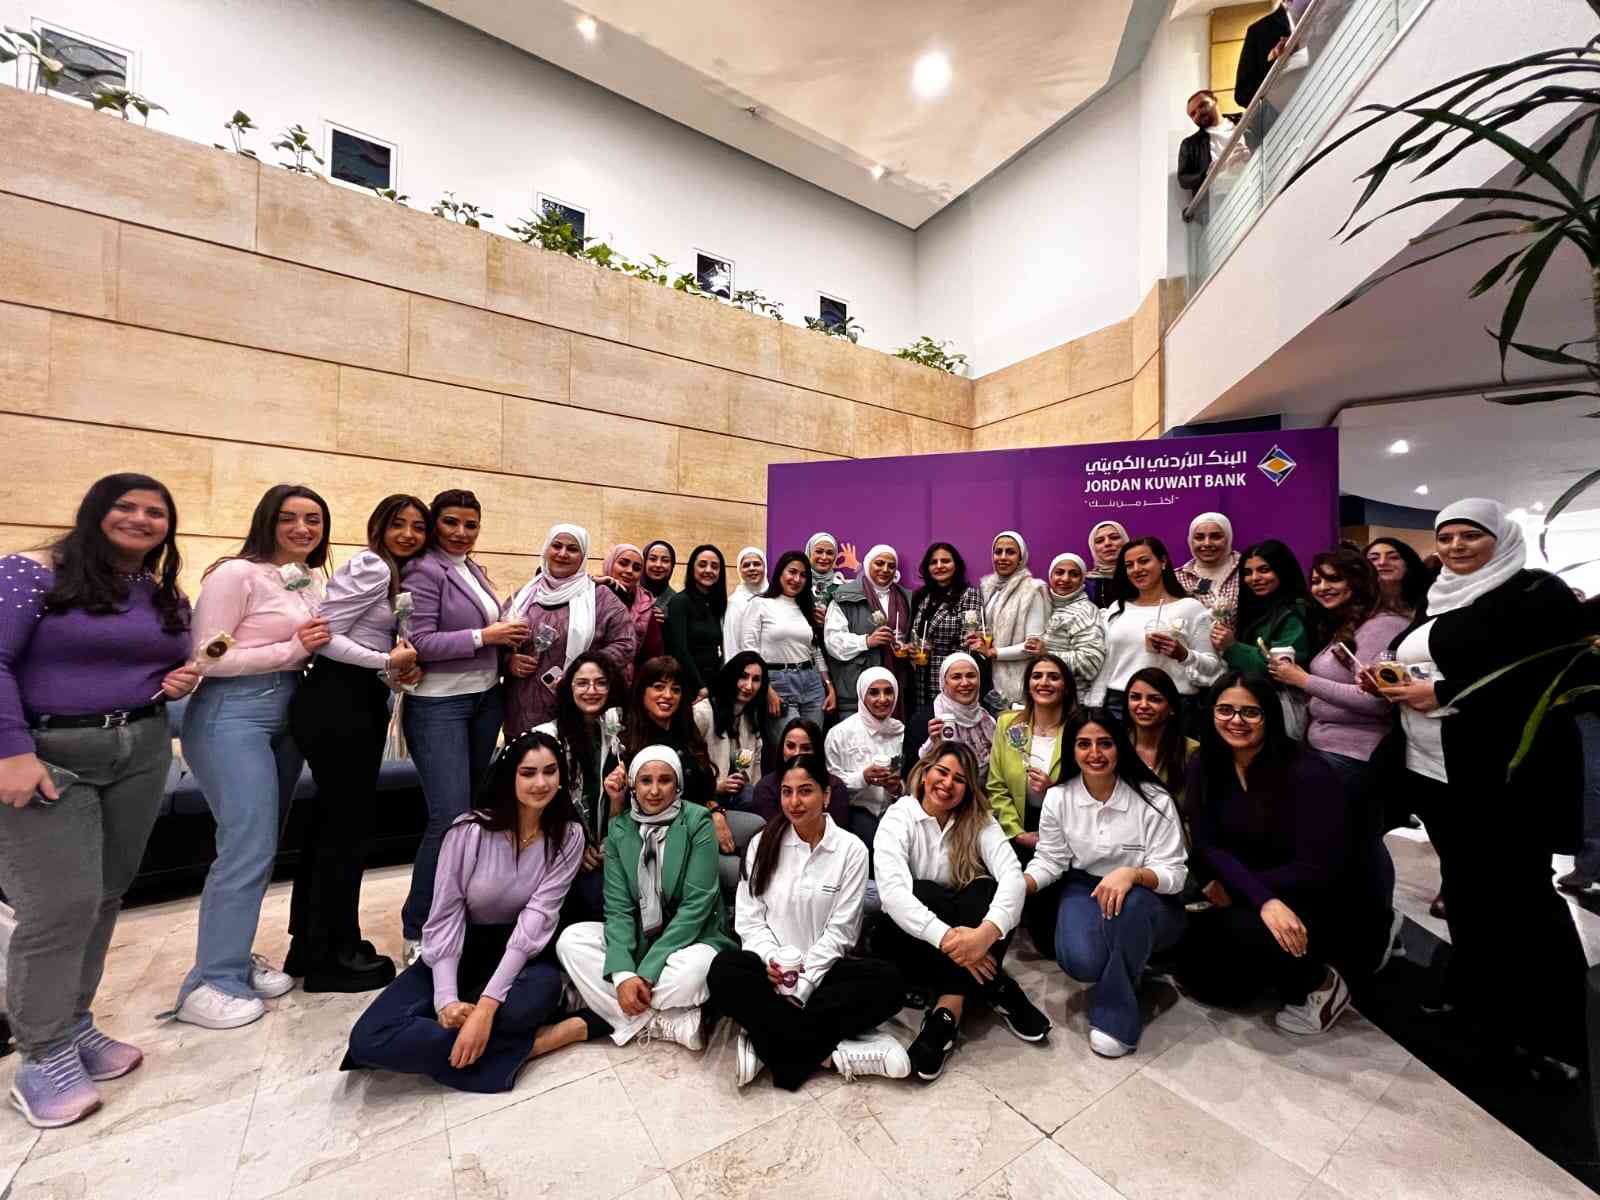 البنك الأردني الكويتي يحتفل بالمرأة بمناسبة يومها العالمي